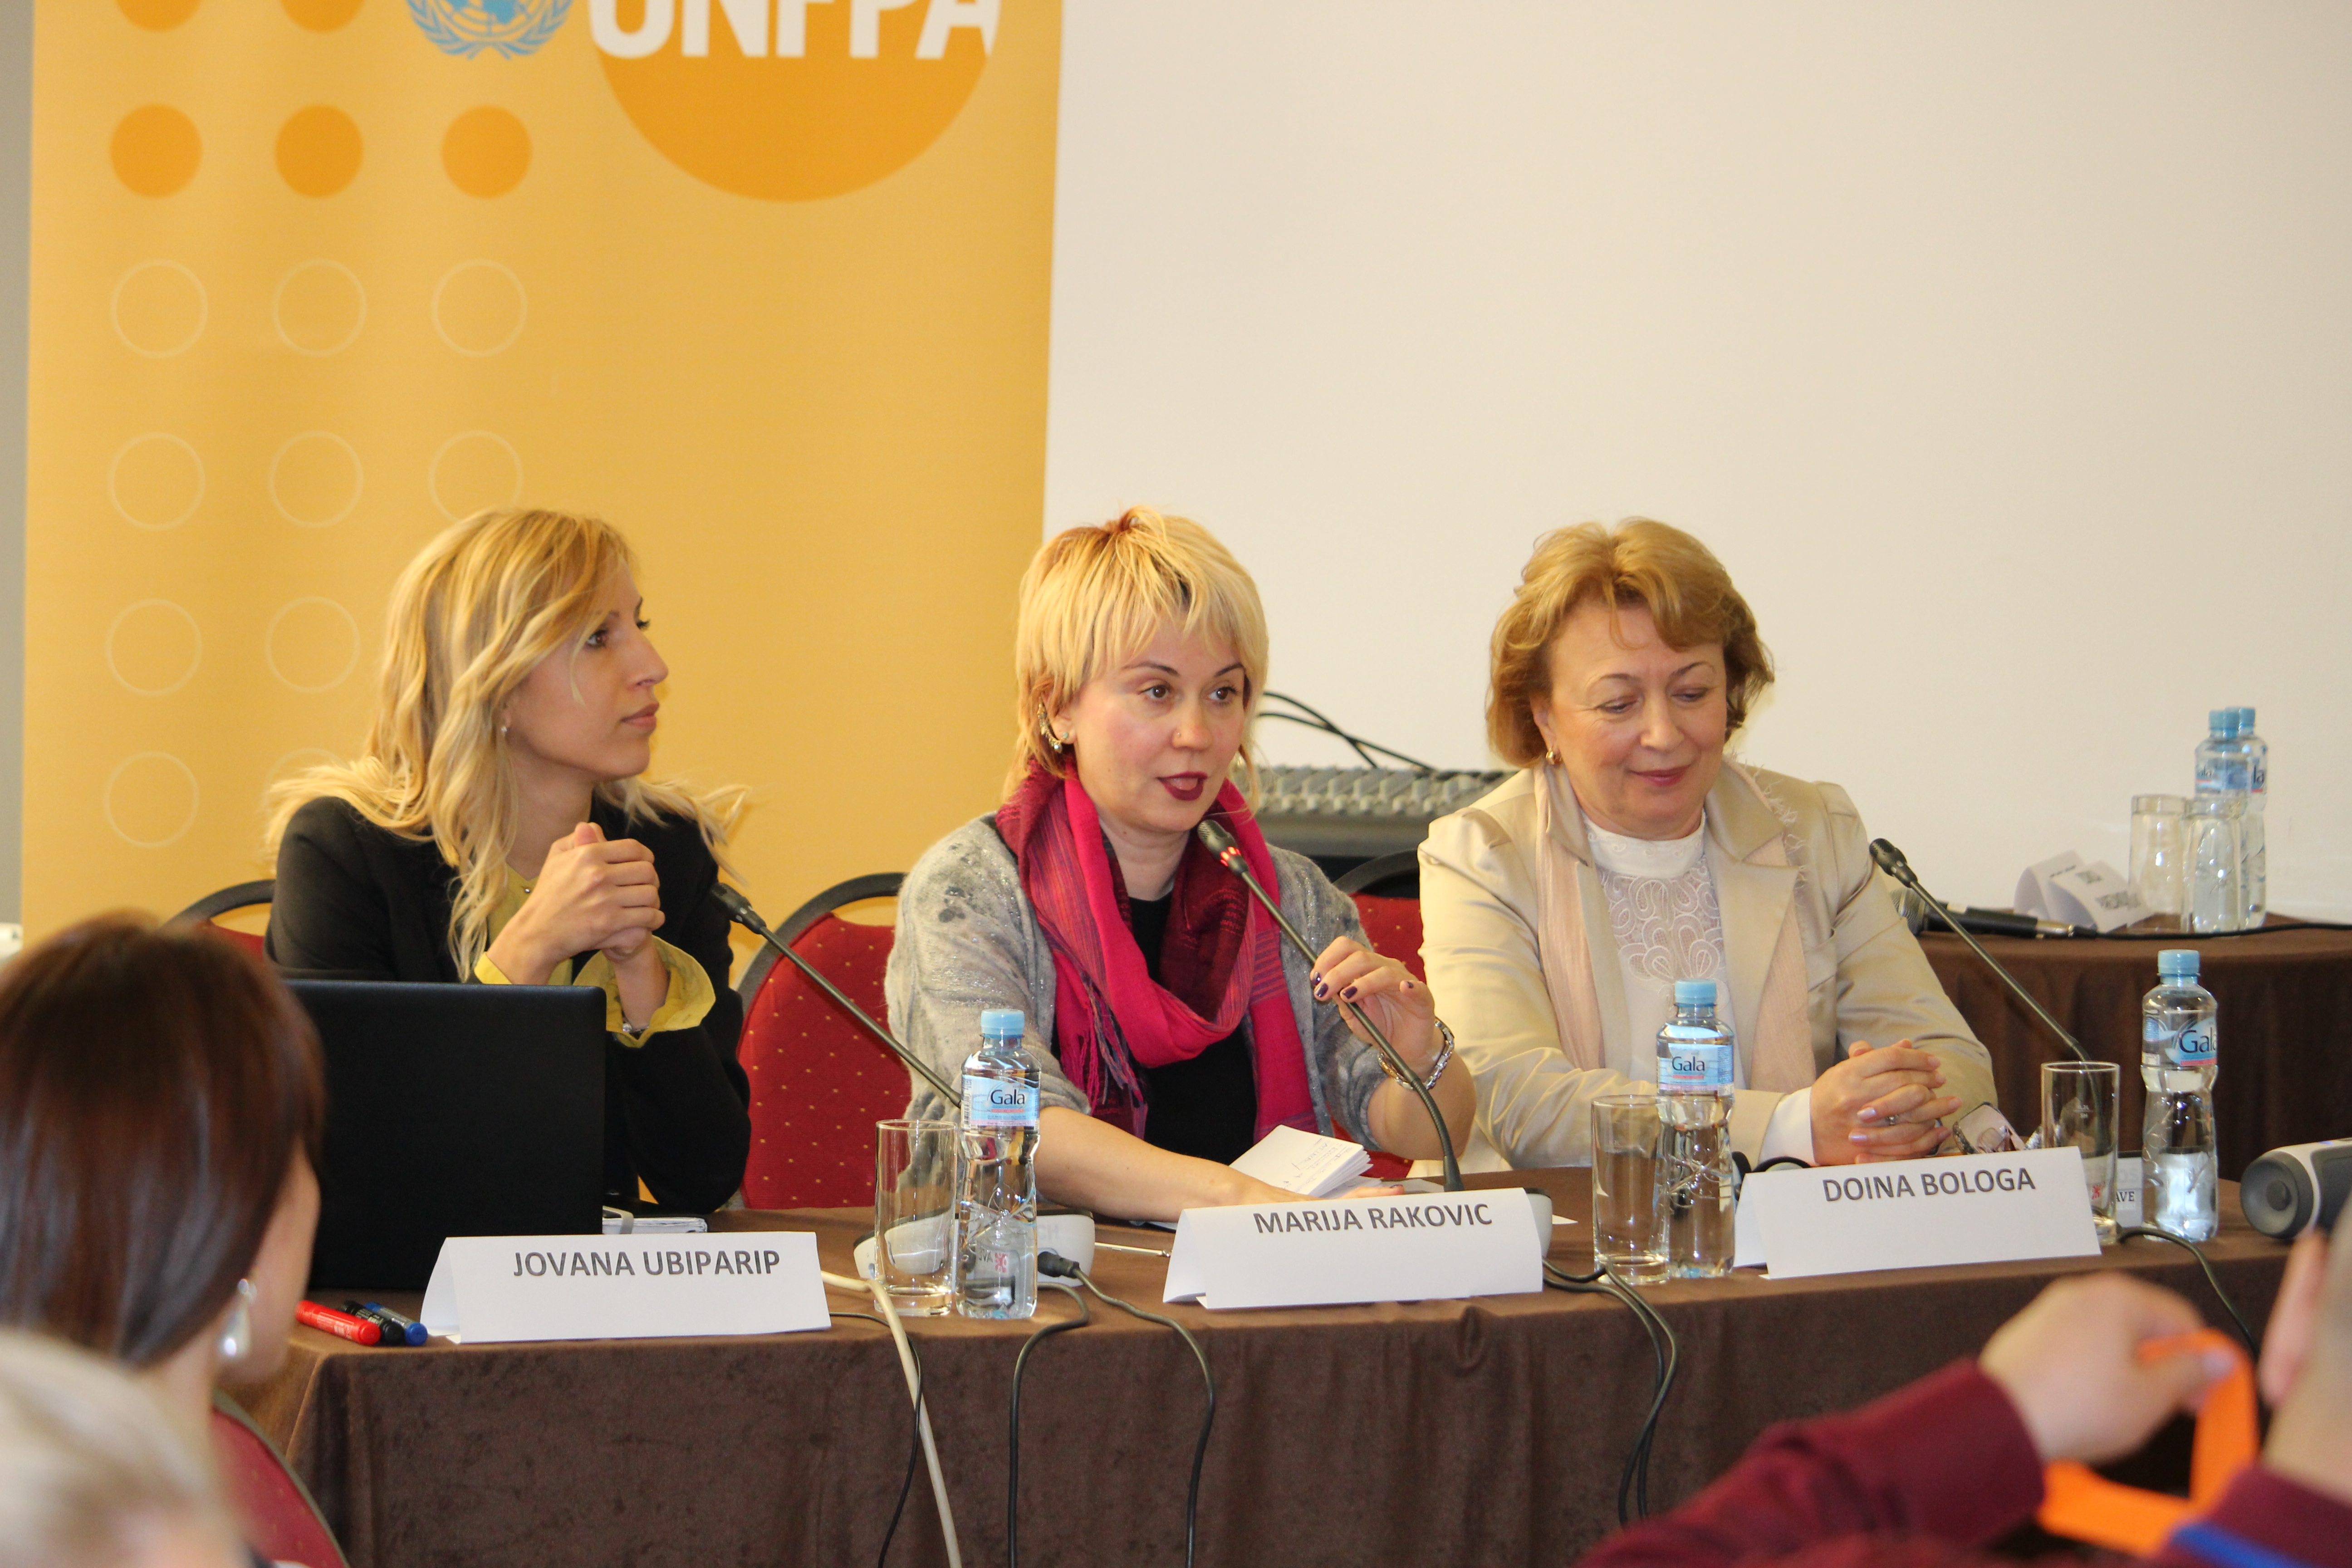 Working Group for Gender Based Violence established in Serbia, NGO Atina